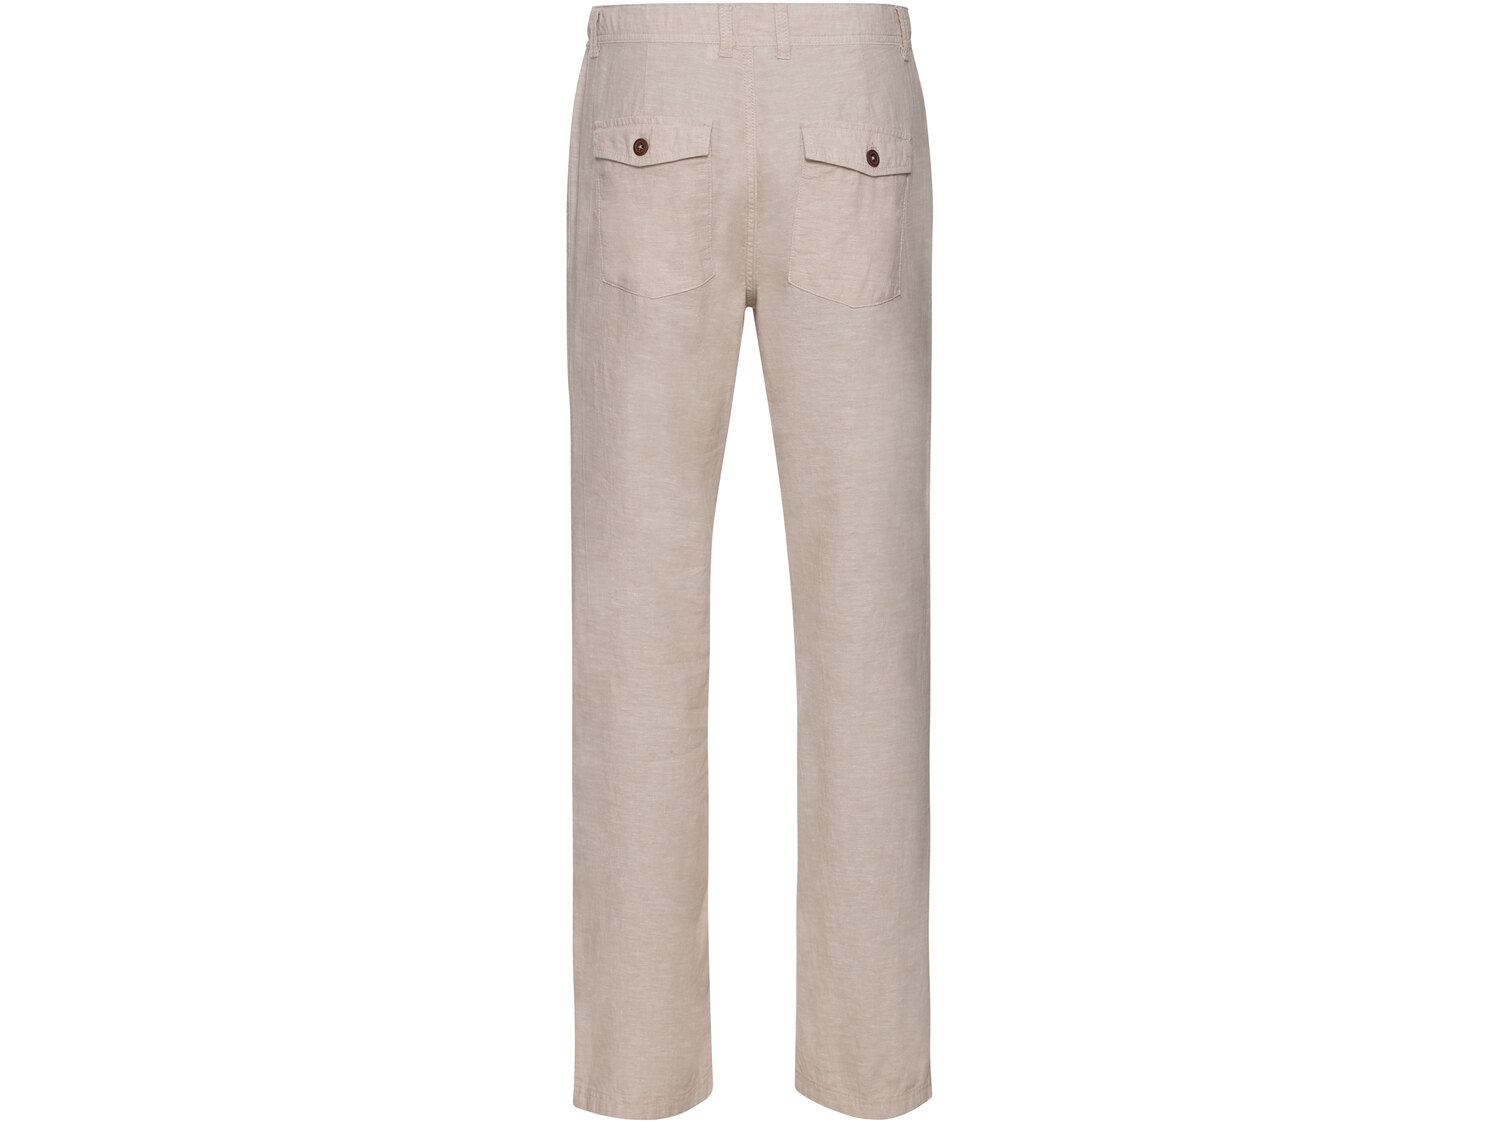 Spodnie męskie z lnem , cena 44,99 PLN 
- 55% lnu, 45% bawełny
- rozmiary: 48-54
Dostępne ...